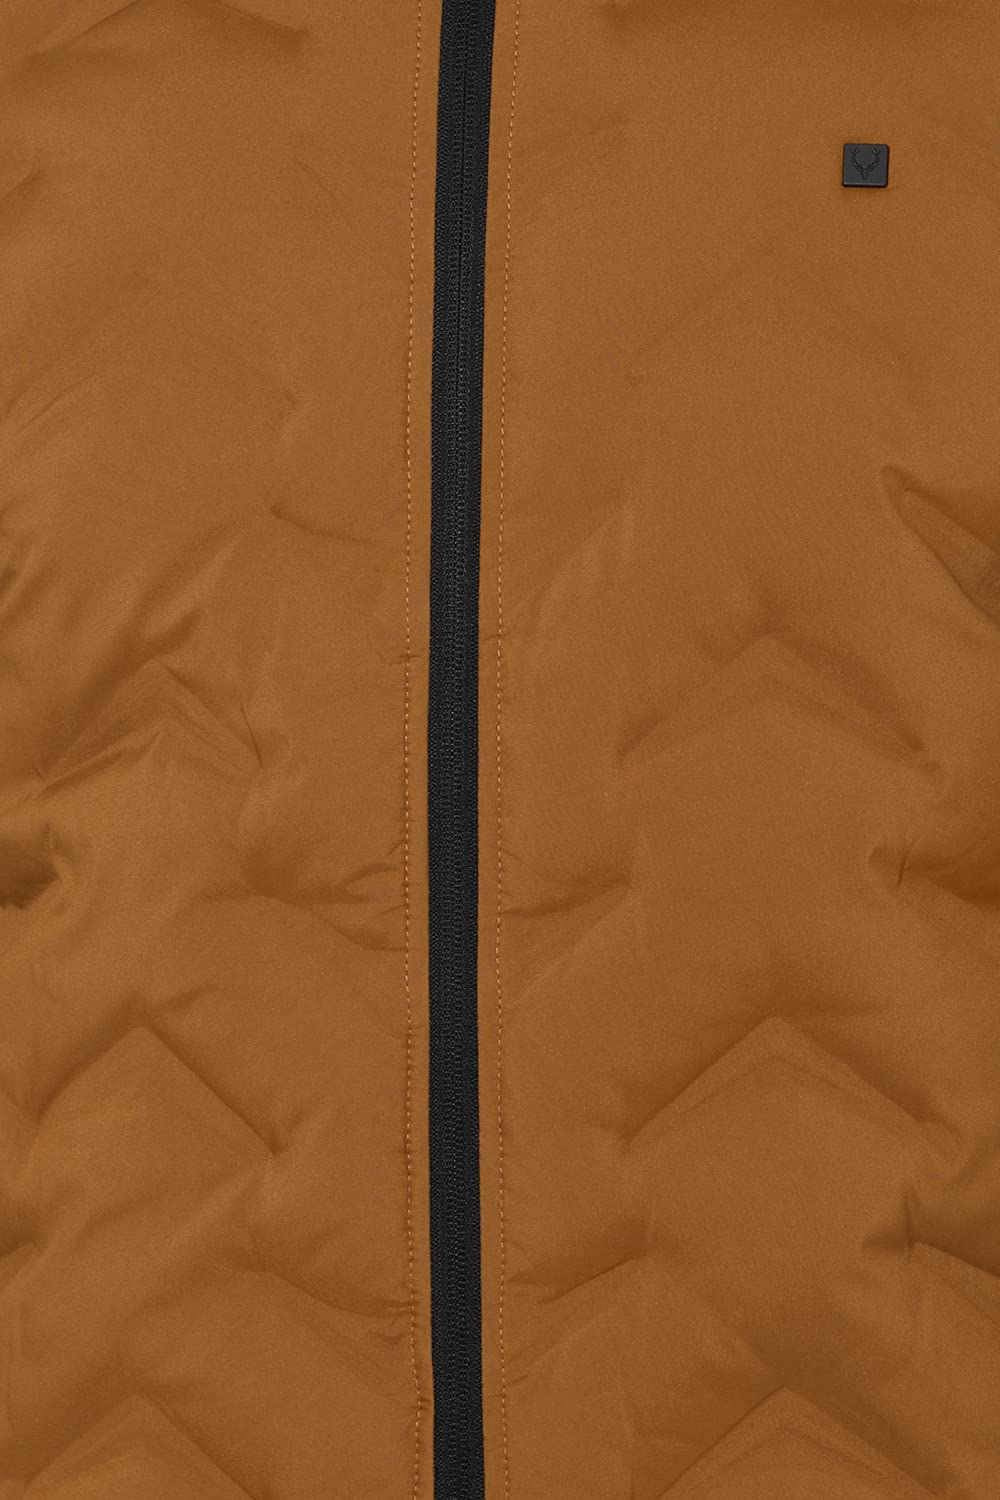 Allen Solly Men's Parka Coat (ASJKHJBOFT65189_Khaki_M)